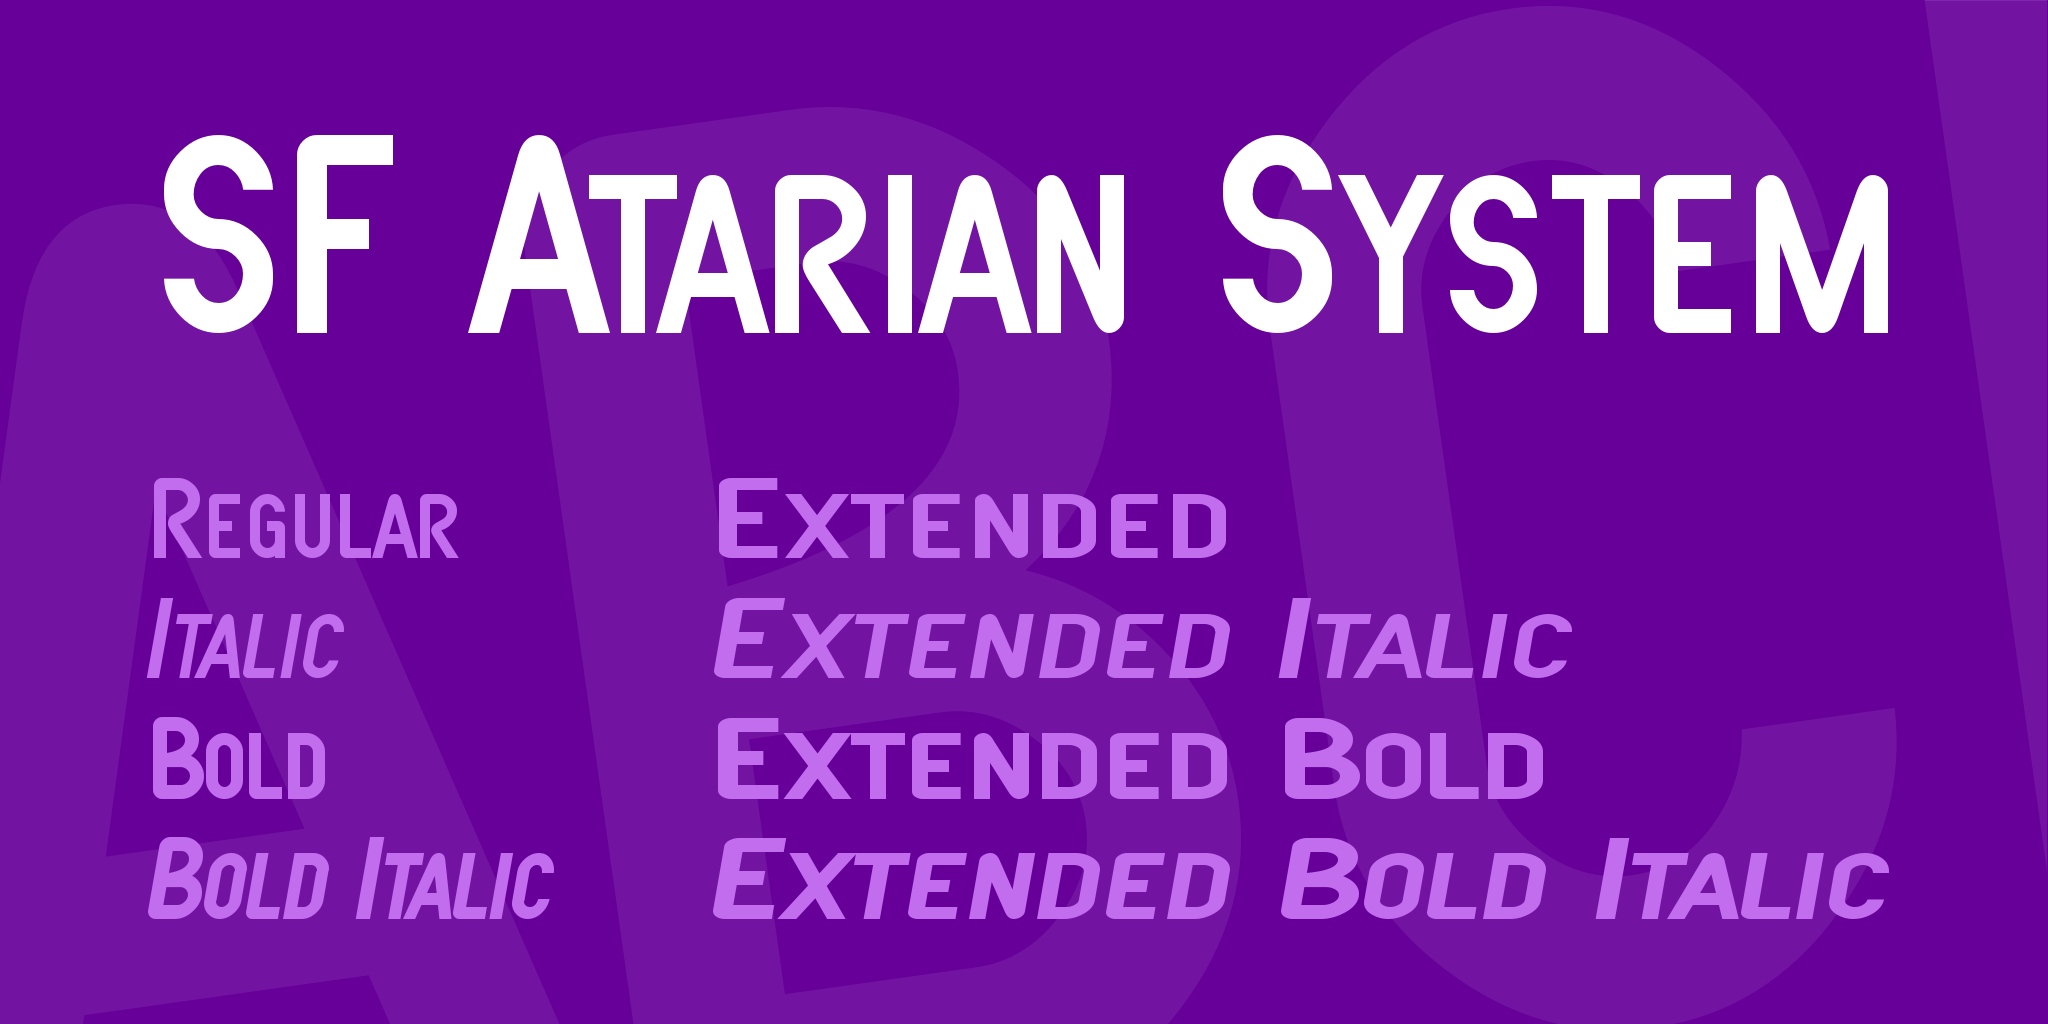 Sf Atarian System